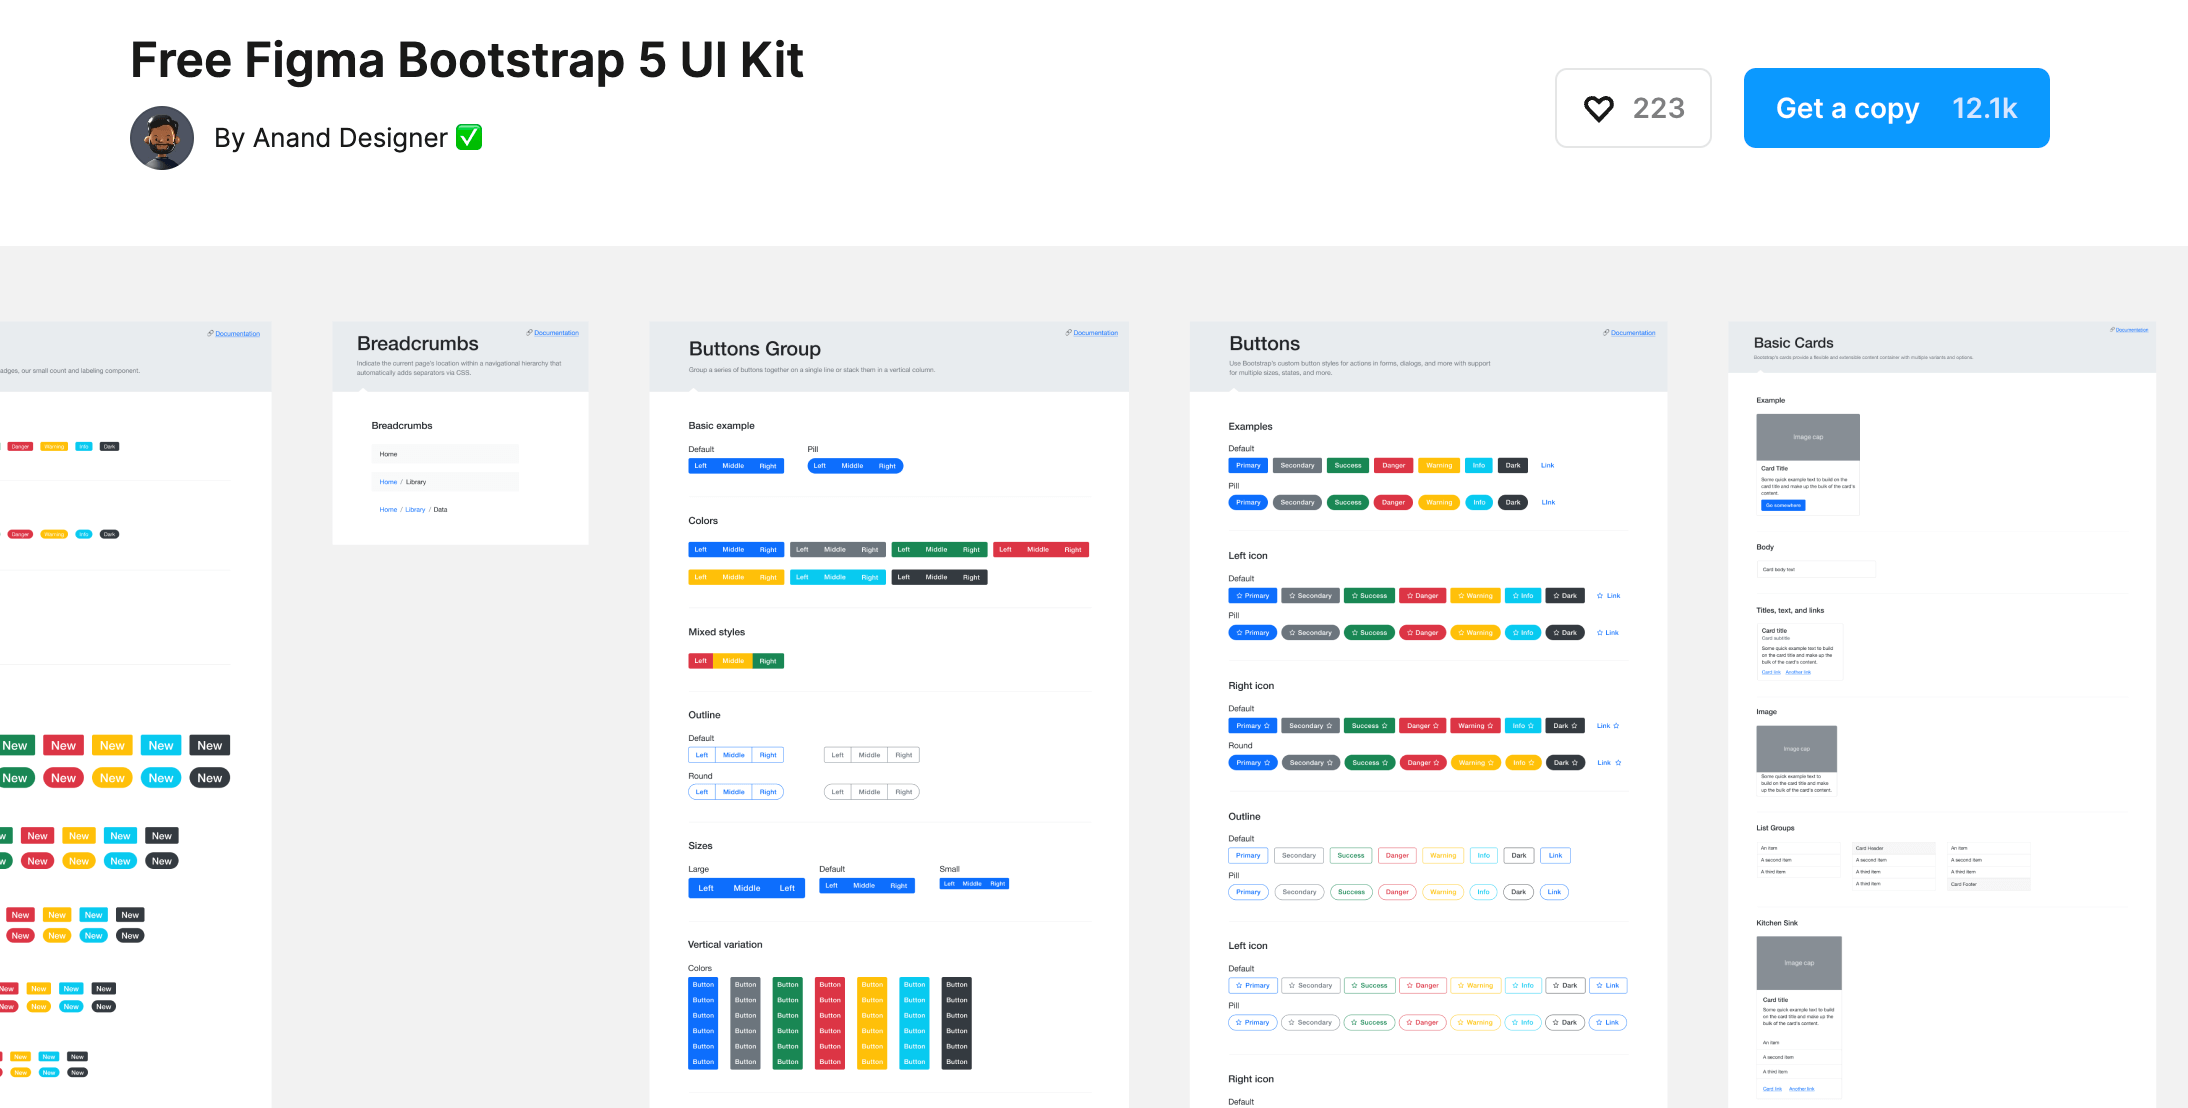 無料で使えるBootstrap5のUIKit Free Figma Bootstrap 5 UI Kit